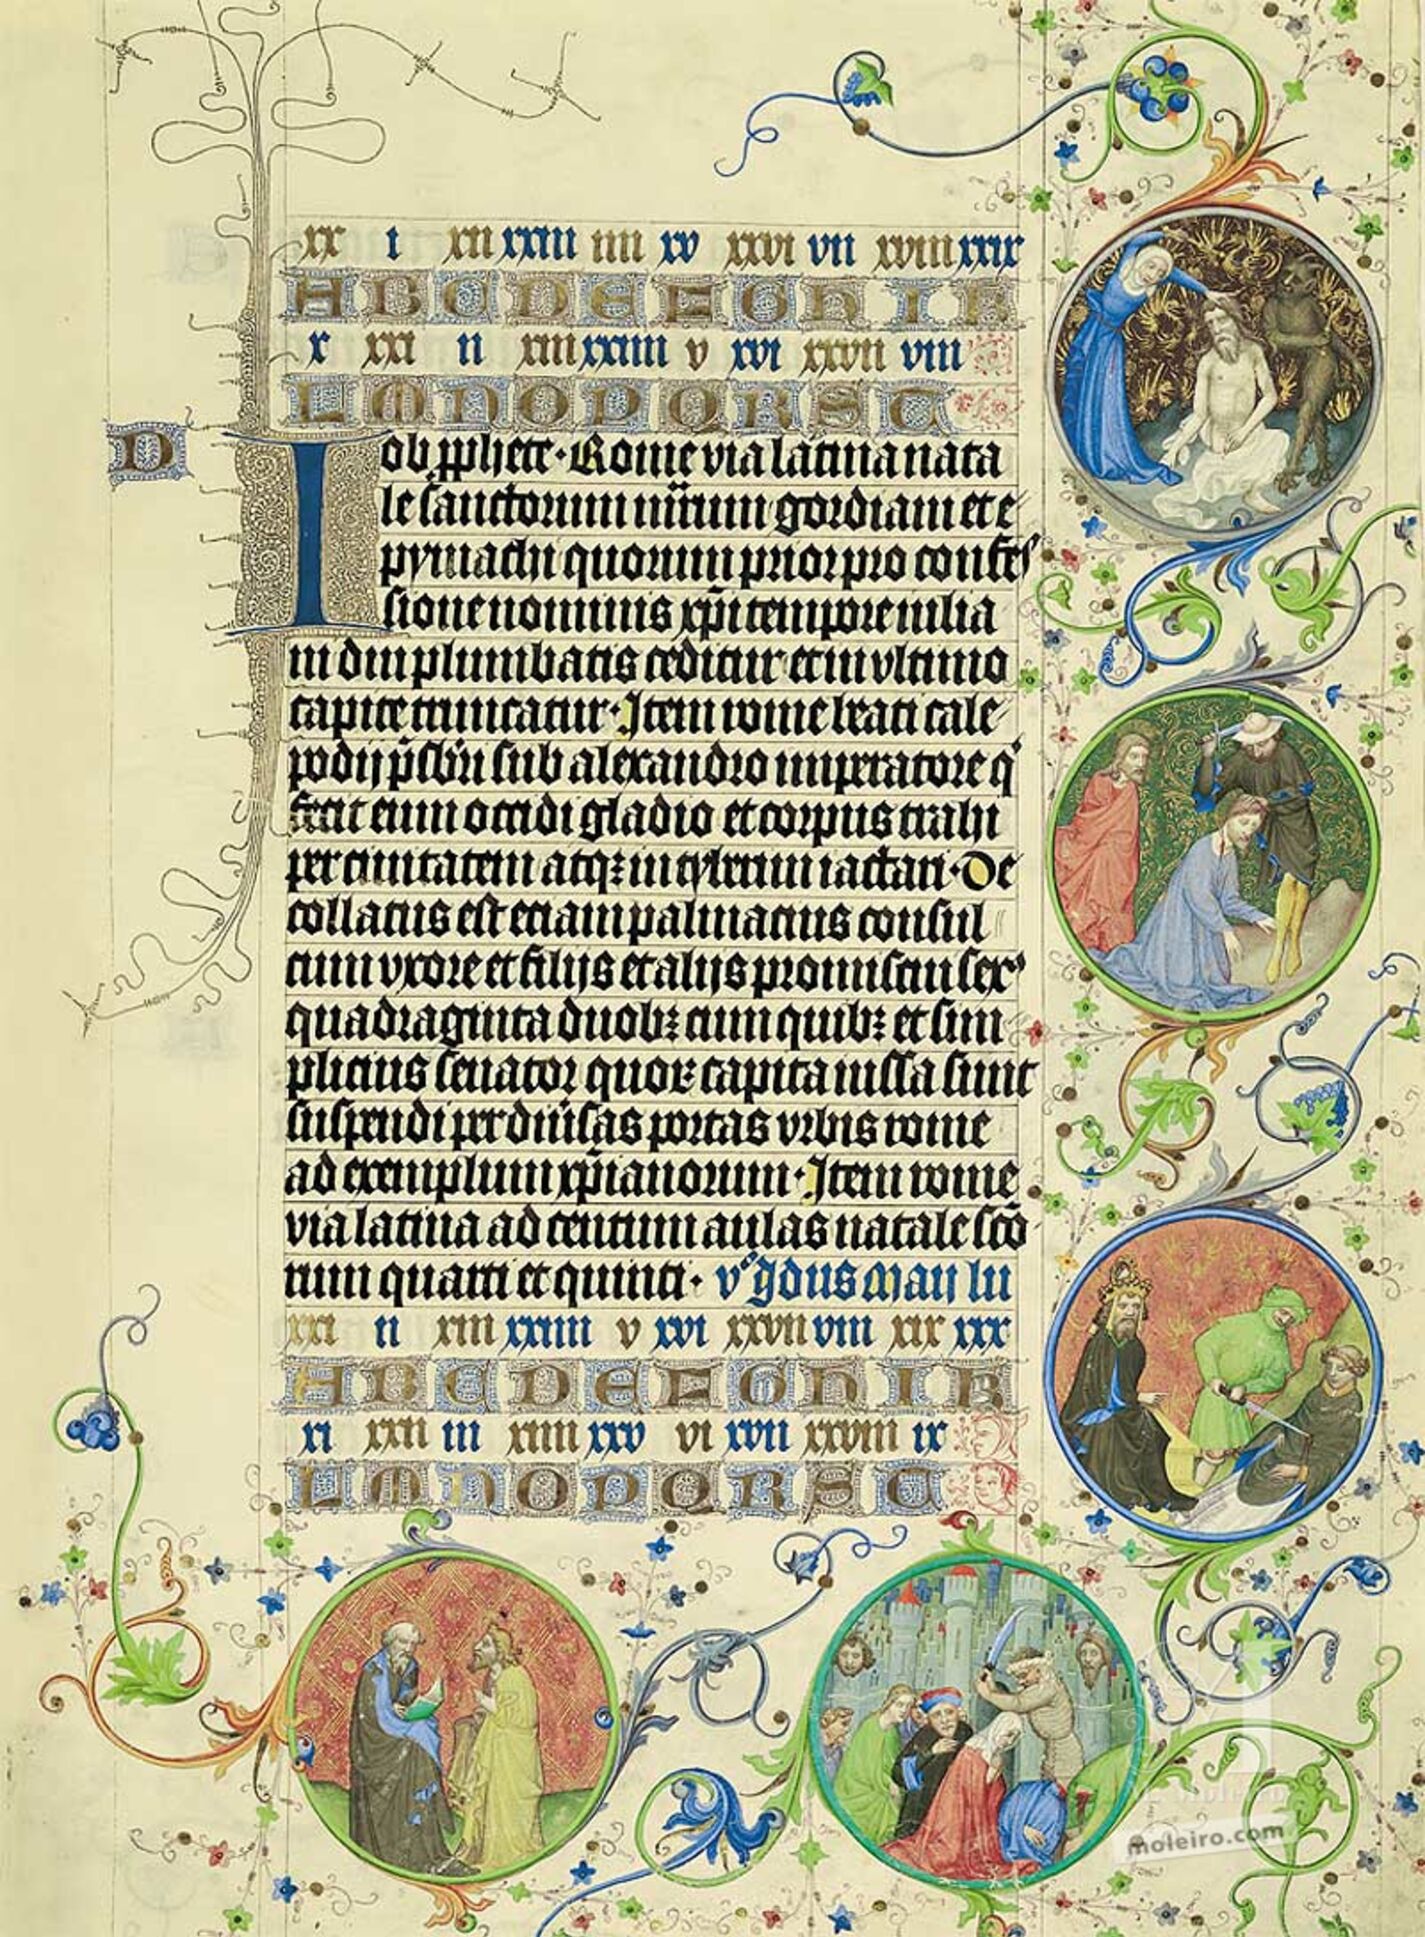 Lámina del Martirologio de Usuardo, 10 de Mayo (folio 49r)